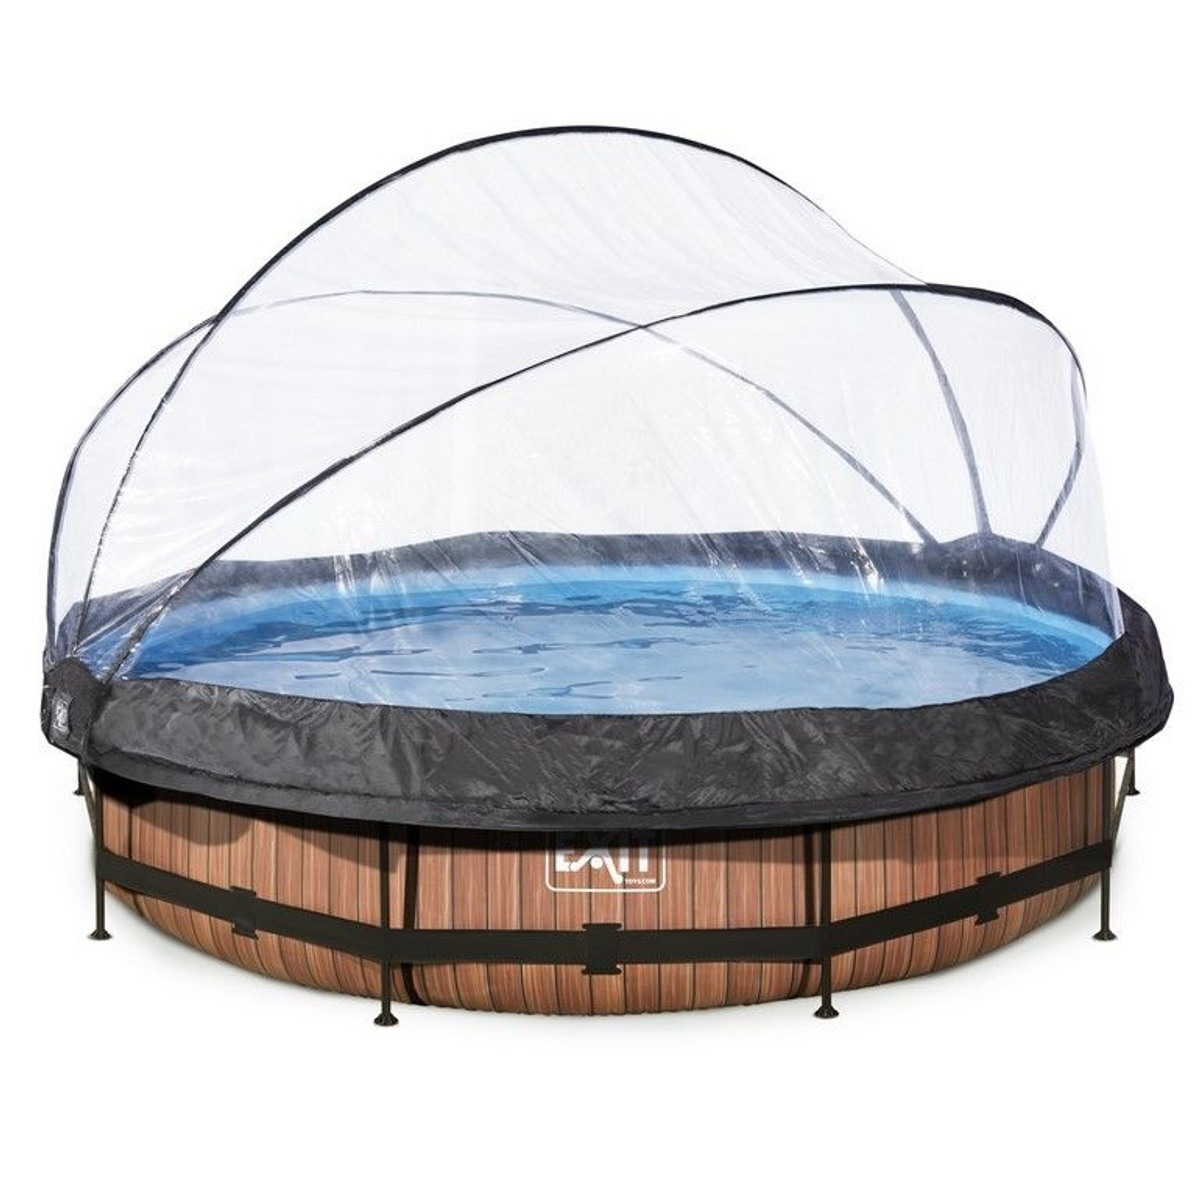 EXIT Wood zwembad Ã¸360x76cm met overkapping en filterpomp - bruin